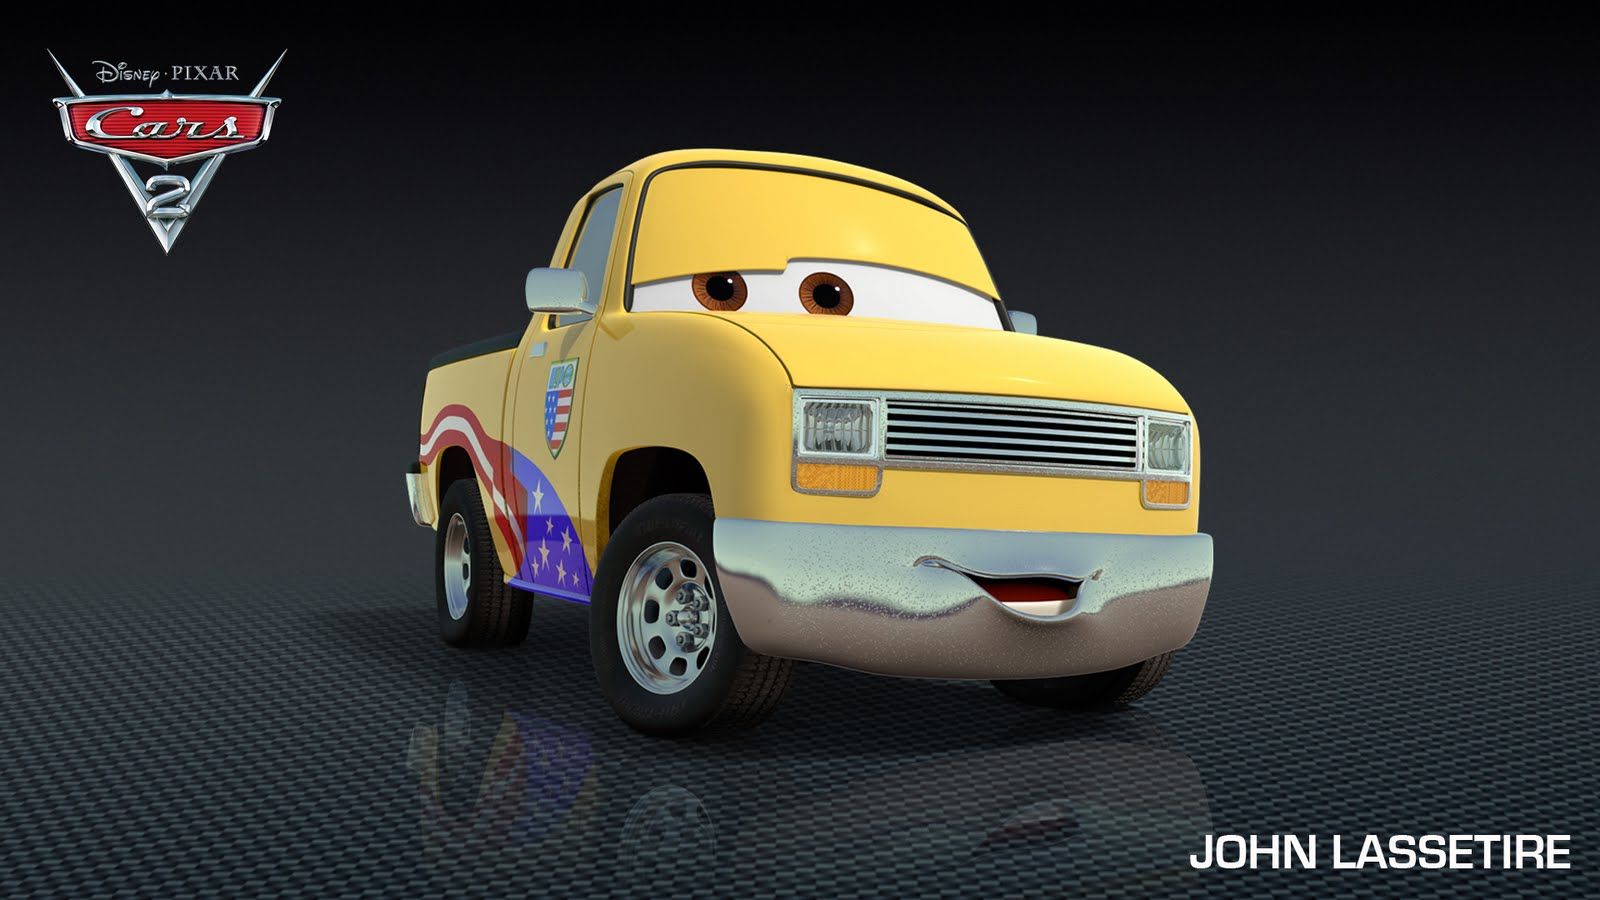 Cars 2 character John Lassitire